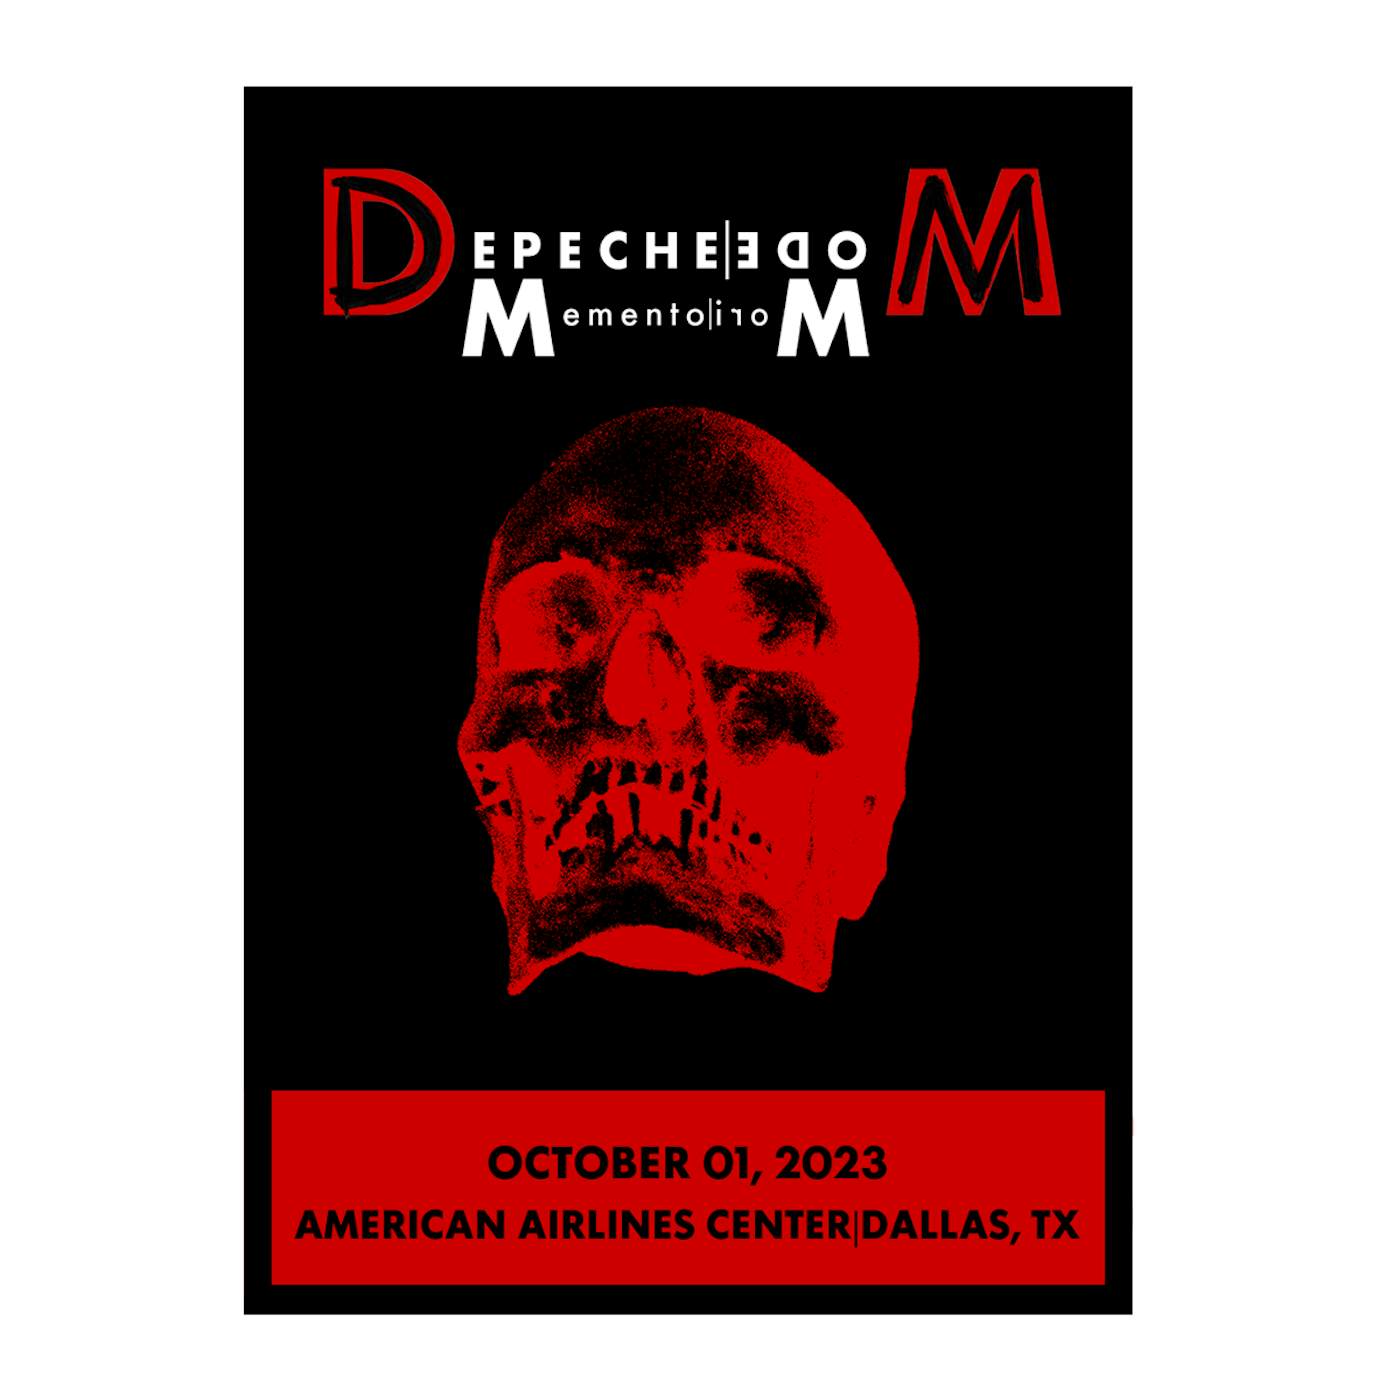 Depeche Mode Memento Mori Tour 2023 Dallas Screen Print Poster Limited Edition